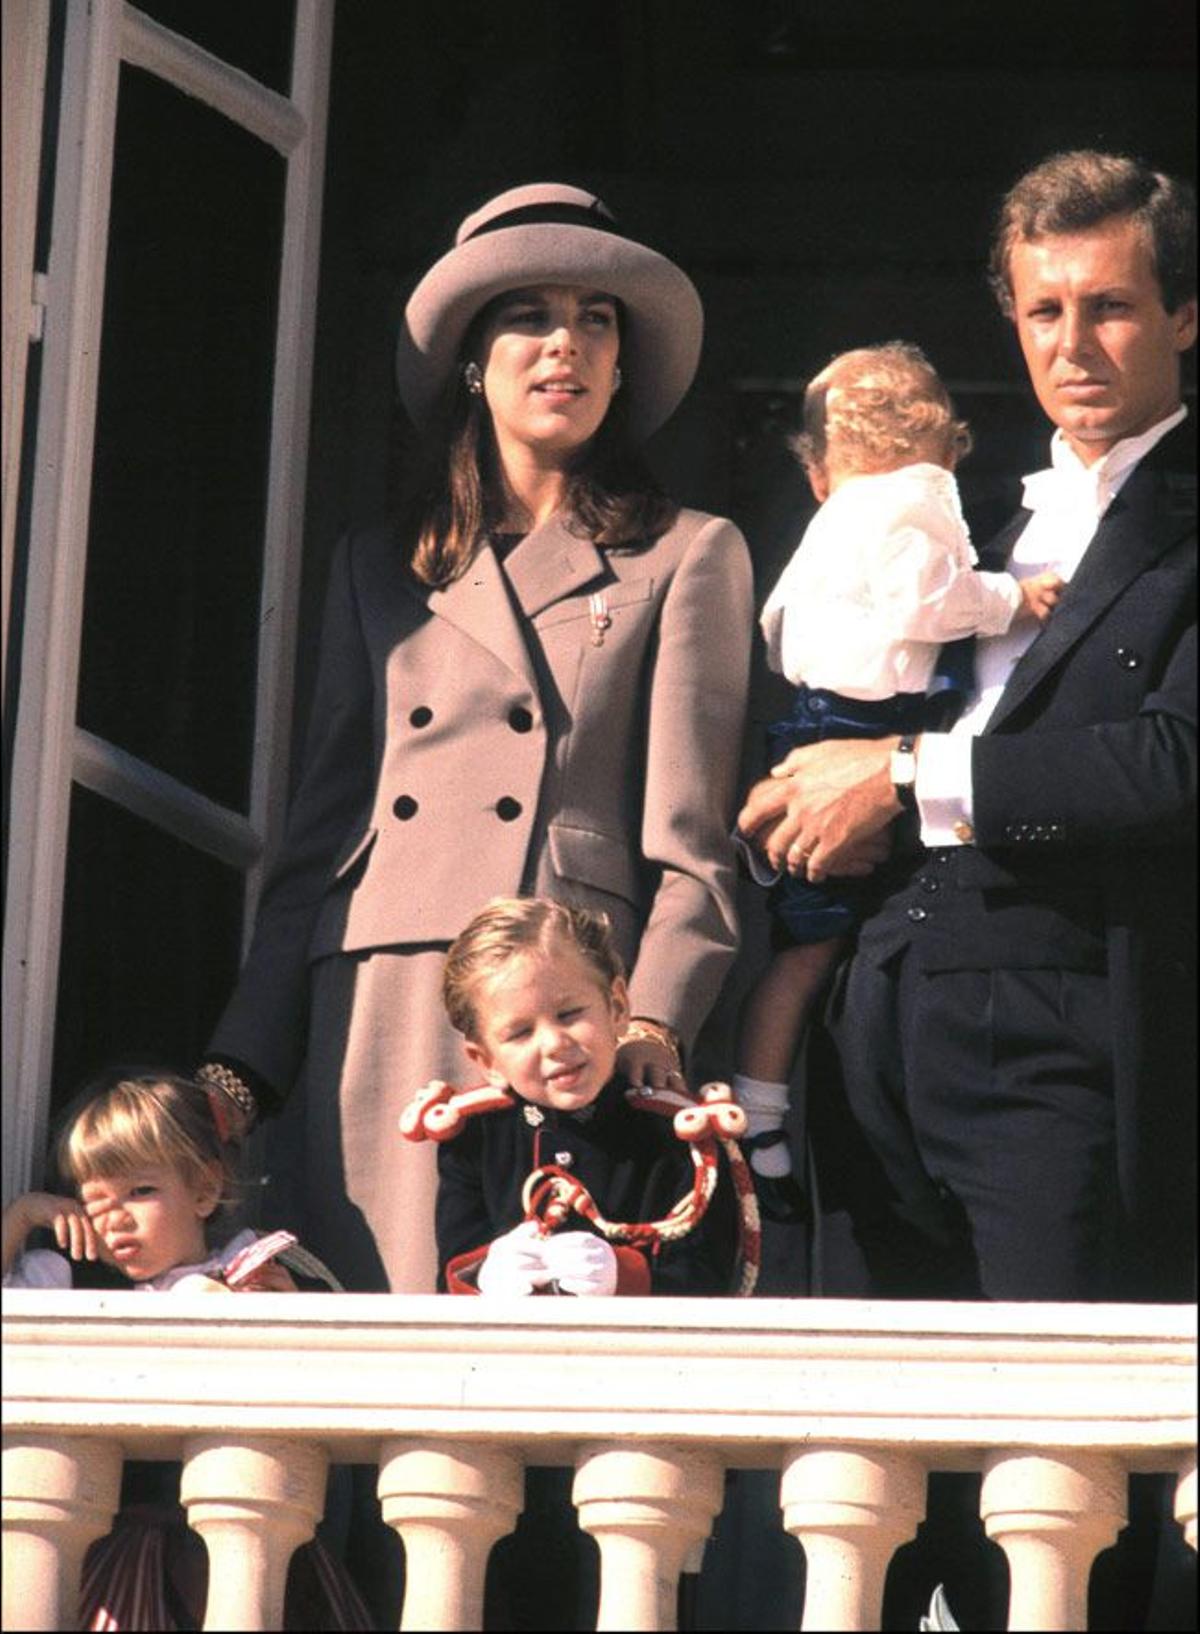 La princesa Carolina de Mónaco en un acto oficial junto a su marido Stefano Casiraghi y sus hijos Andrea, Pierre y Carlota